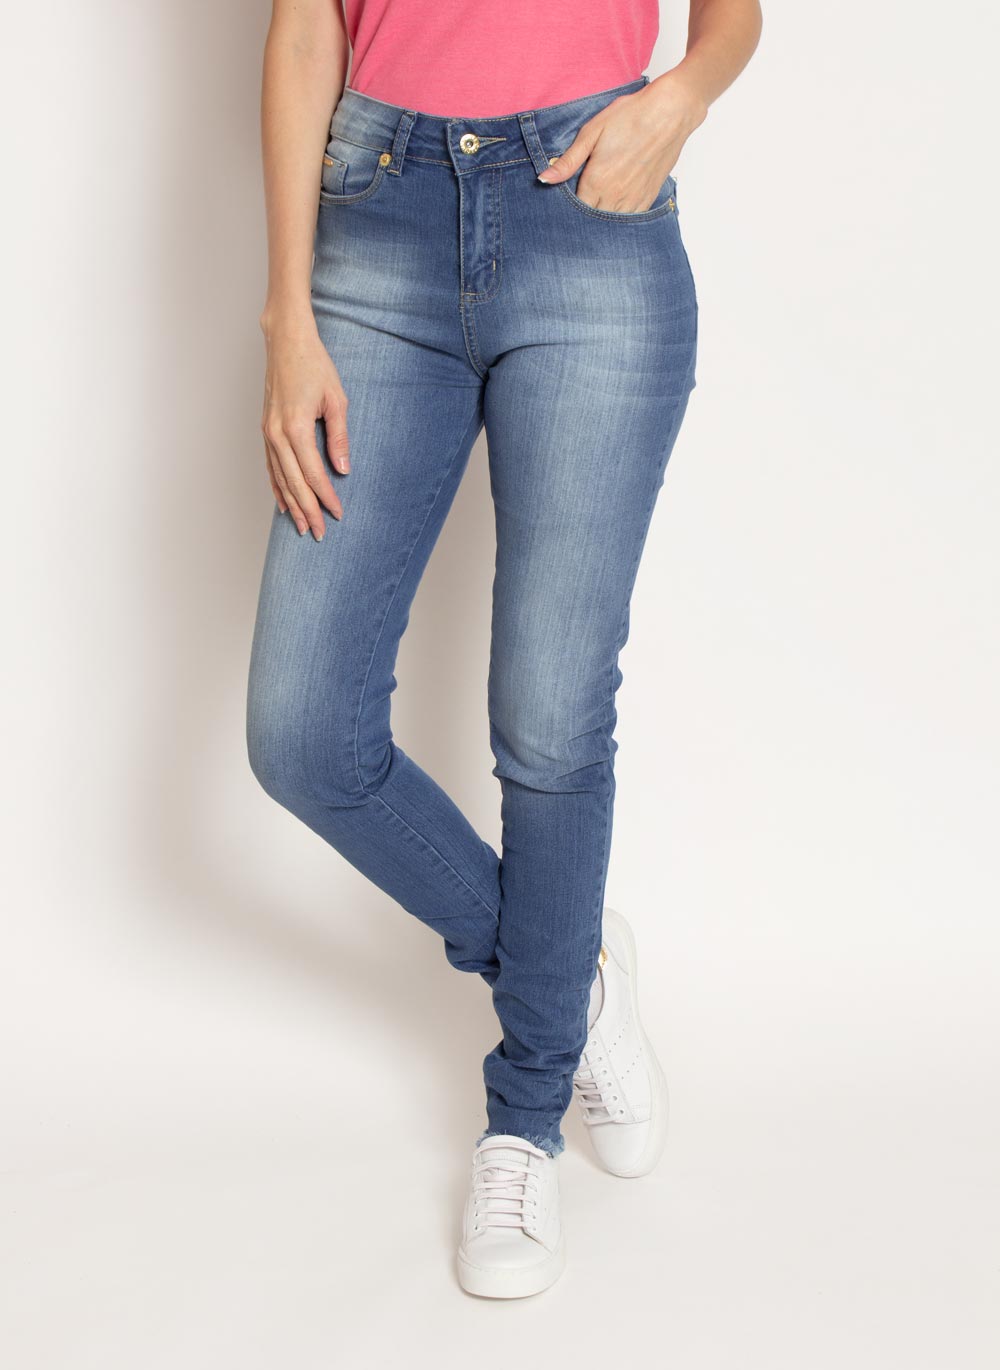 calca-aleatory-feminina-jeans-sofy-modelo-1-